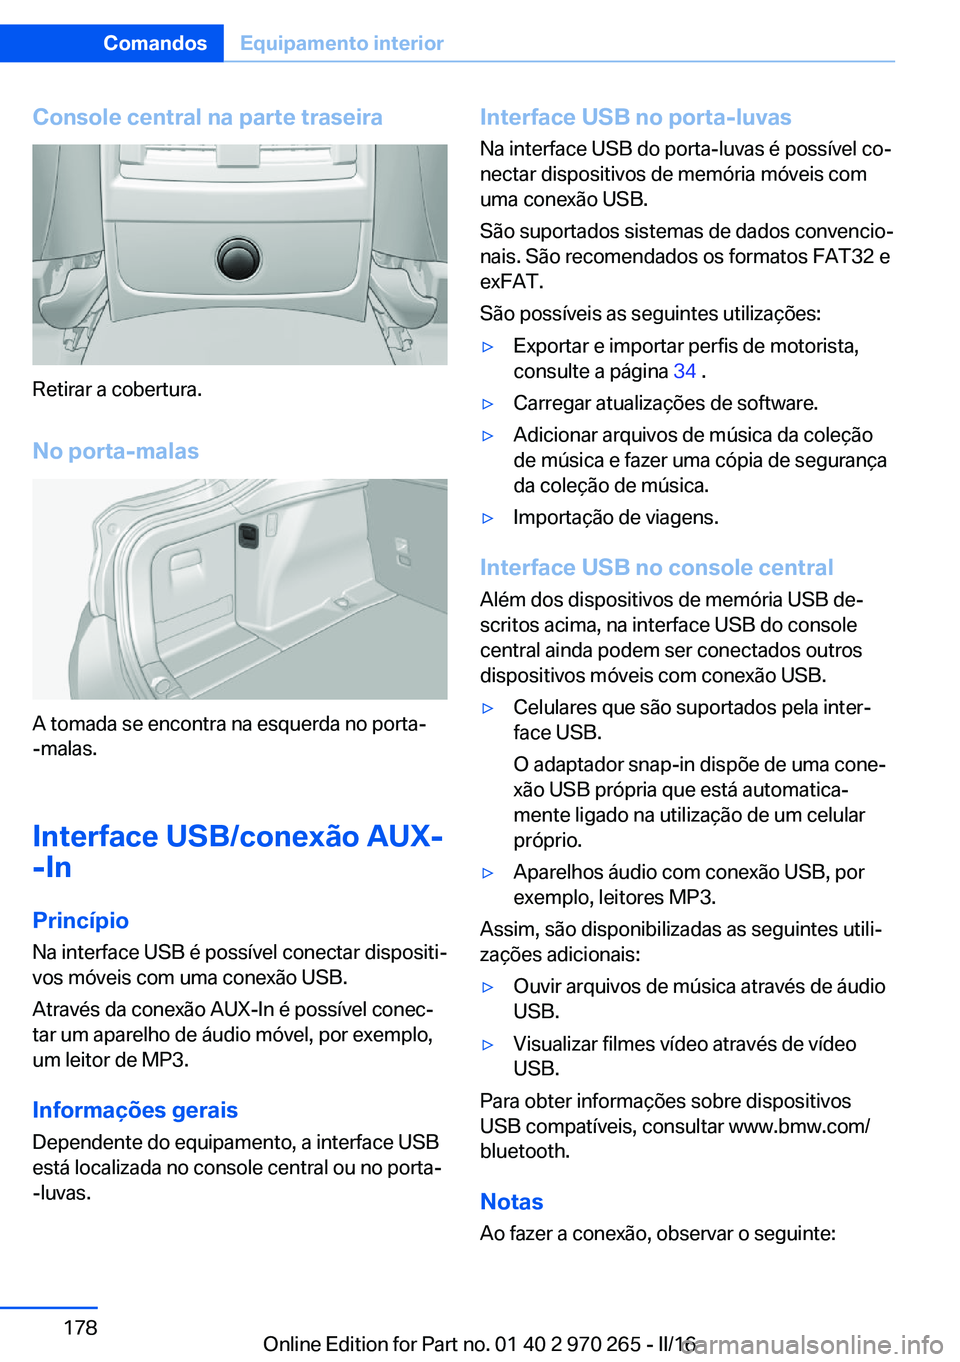 BMW 4 SERIES GRAN COUPE 2016  Manual do condutor (in Portuguese) Console central na parte traseira
Retirar a cobertura.
No porta-malas
A tomada se encontra na esquerda no porta-
-malas.
Interface USB/conexão AUX-
-In
PrincípioNa interface USB é possível conecta